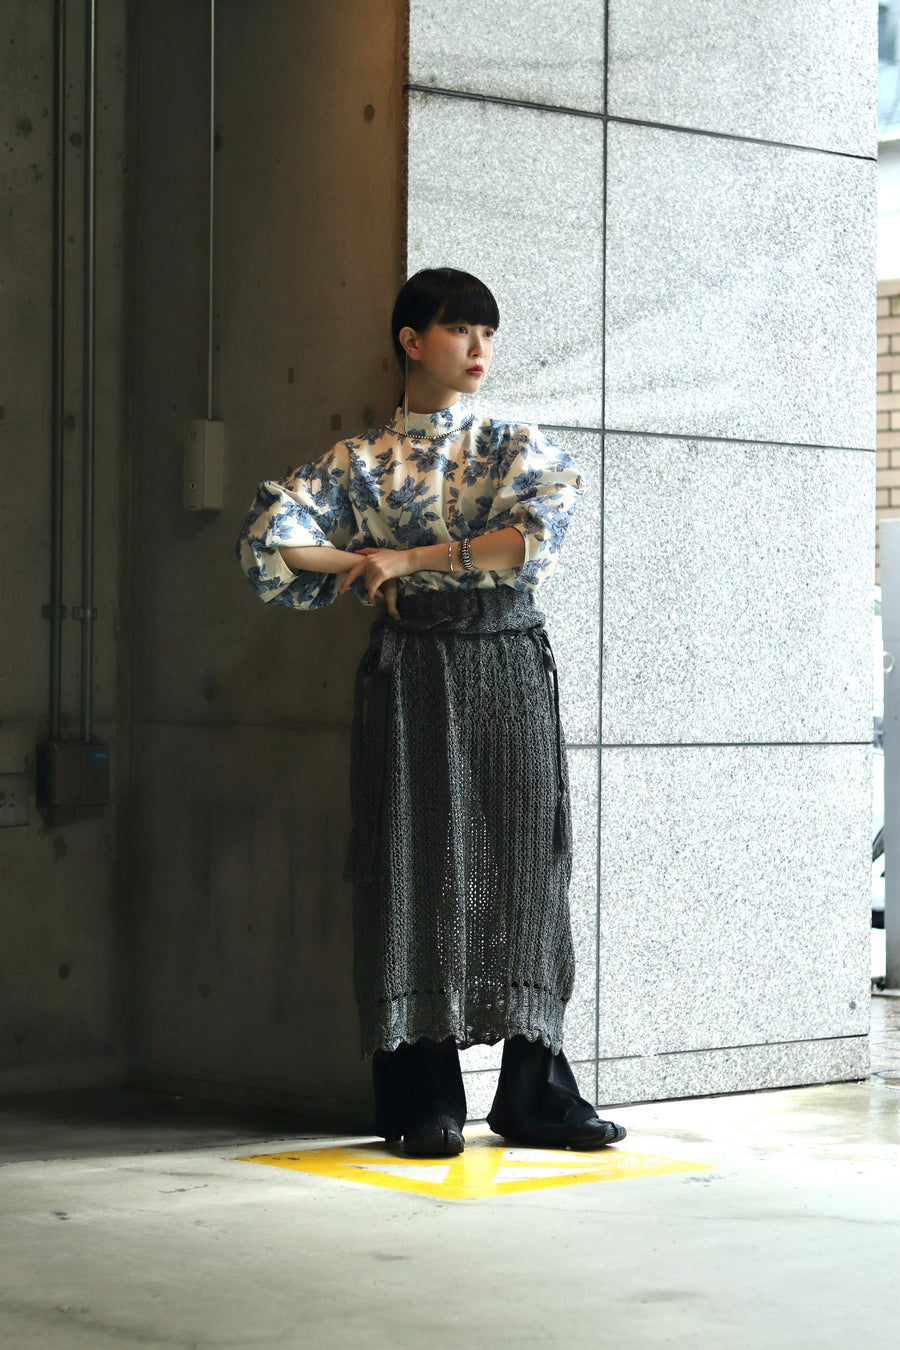 【新品未使用】LENZ knit skirt